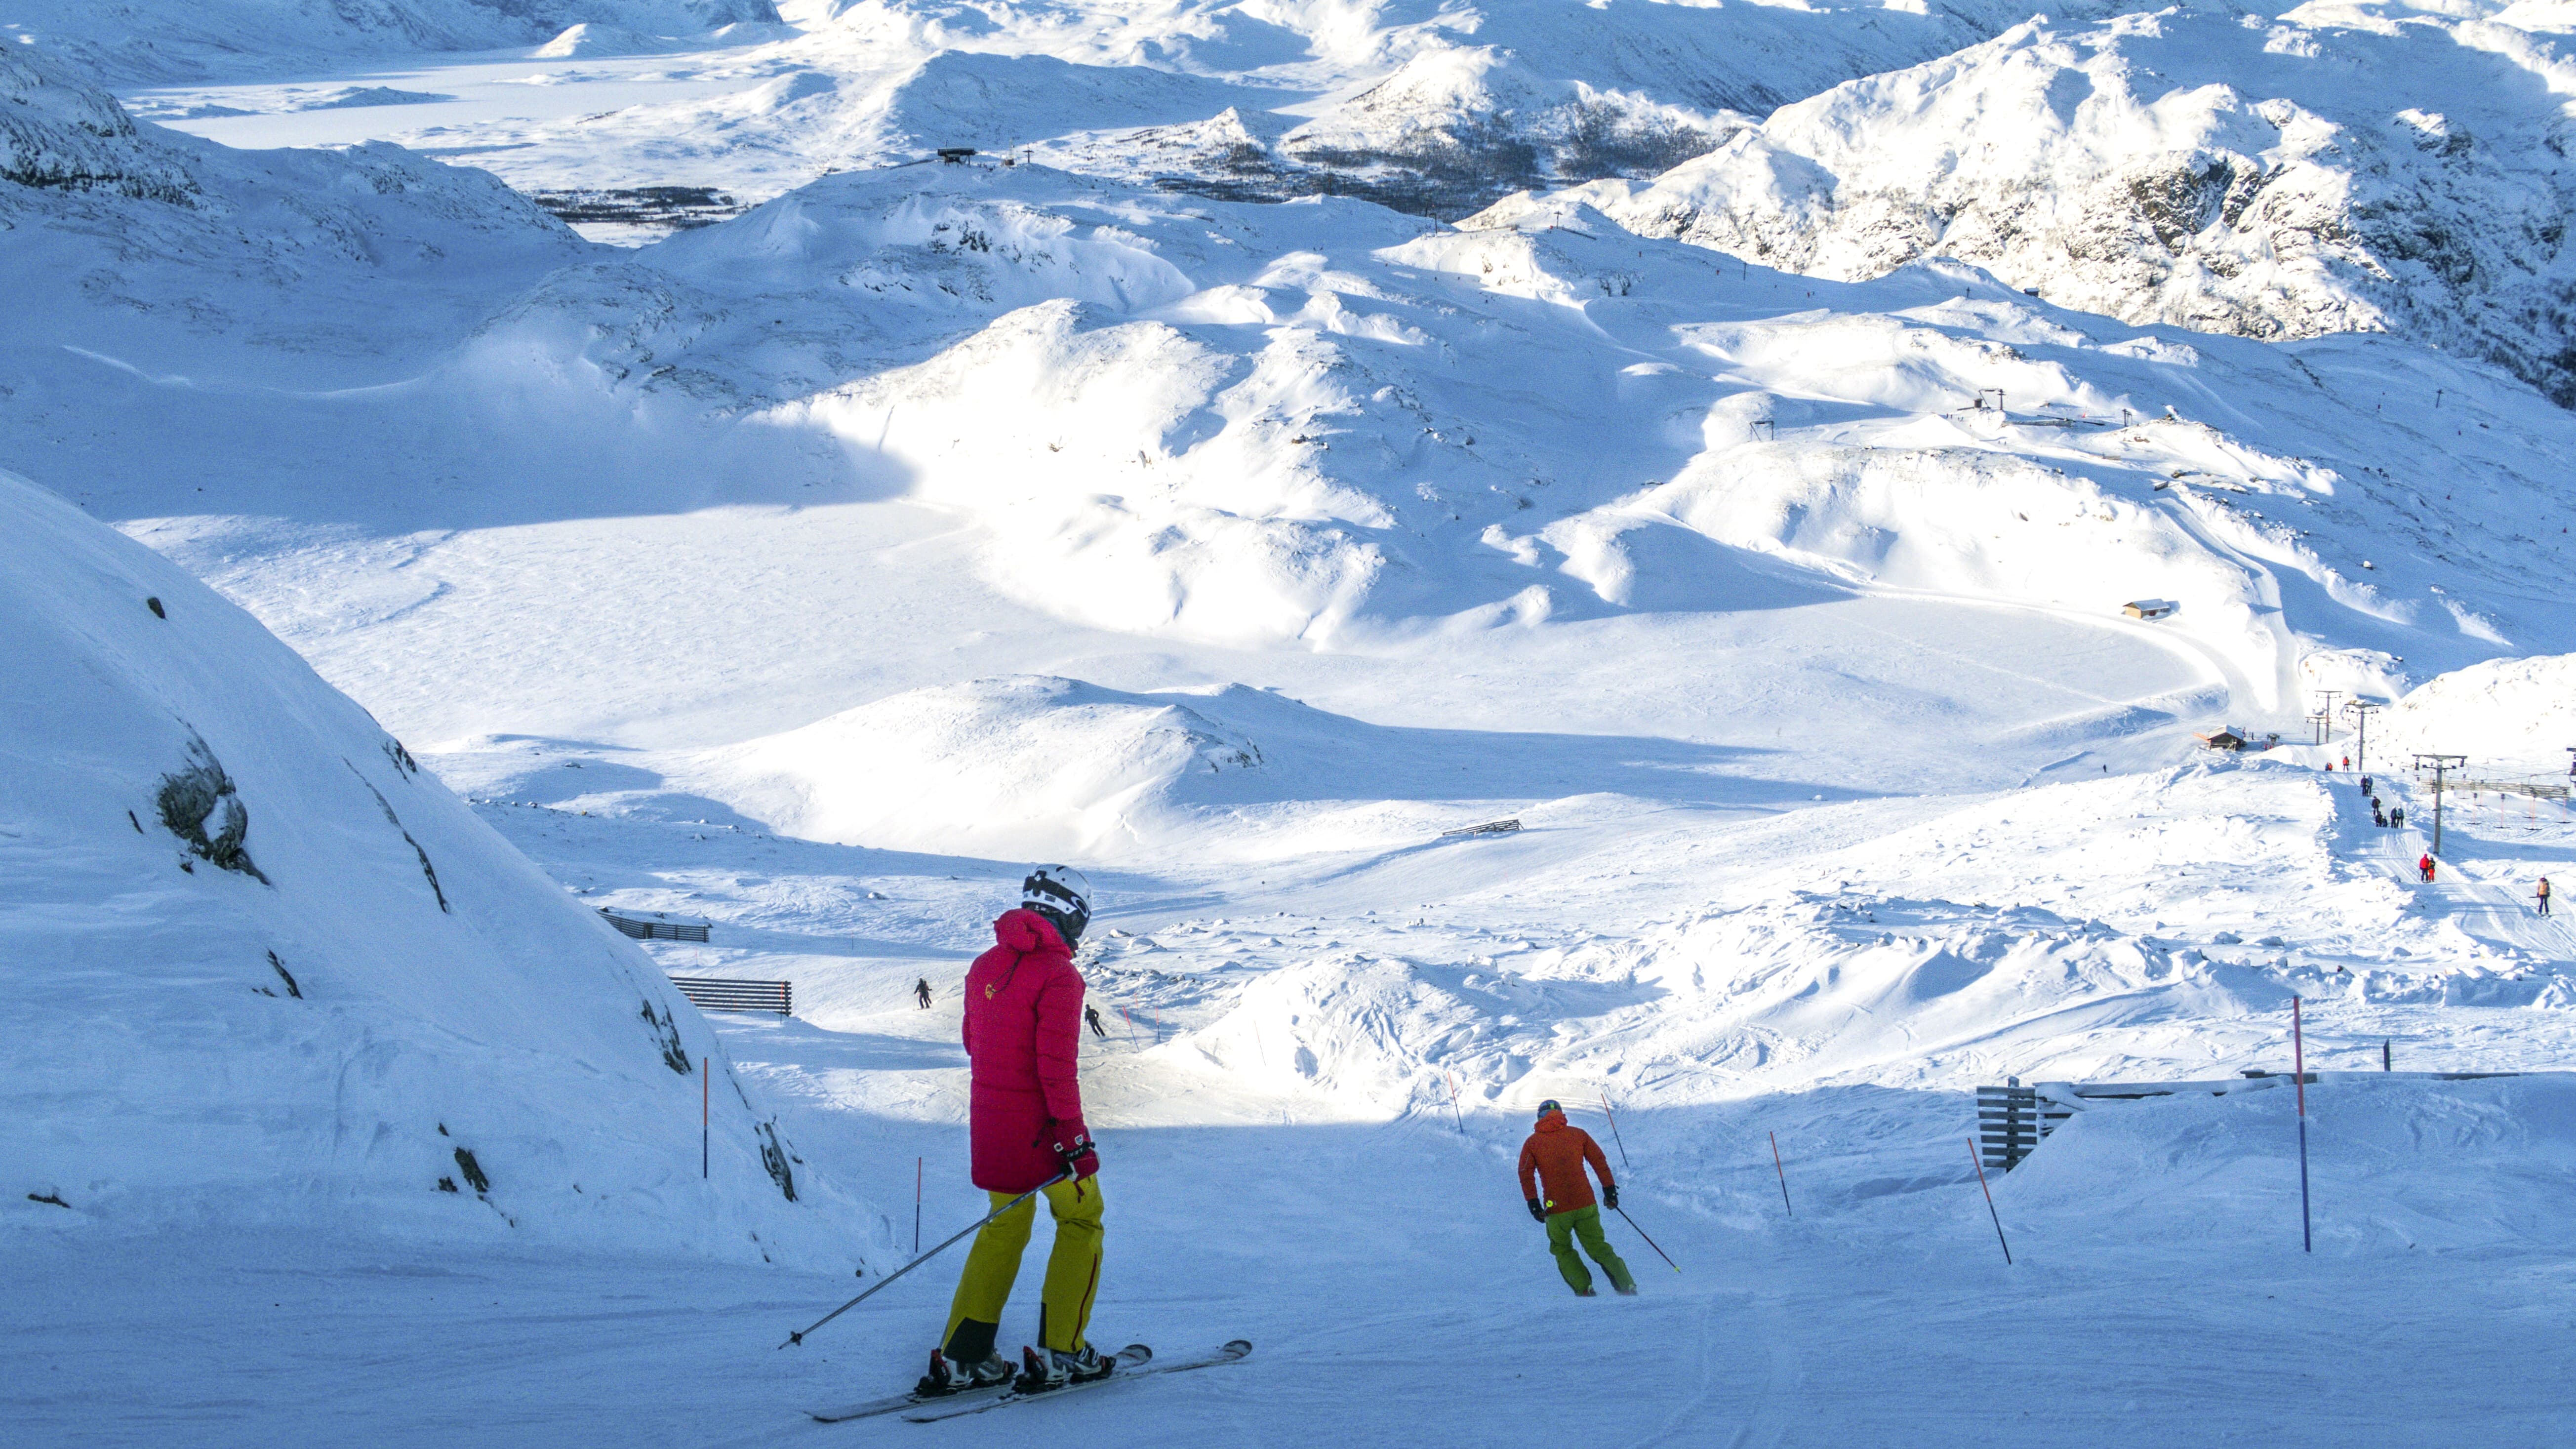 Contre la perte ou le vol, les skis connectés au smartphone